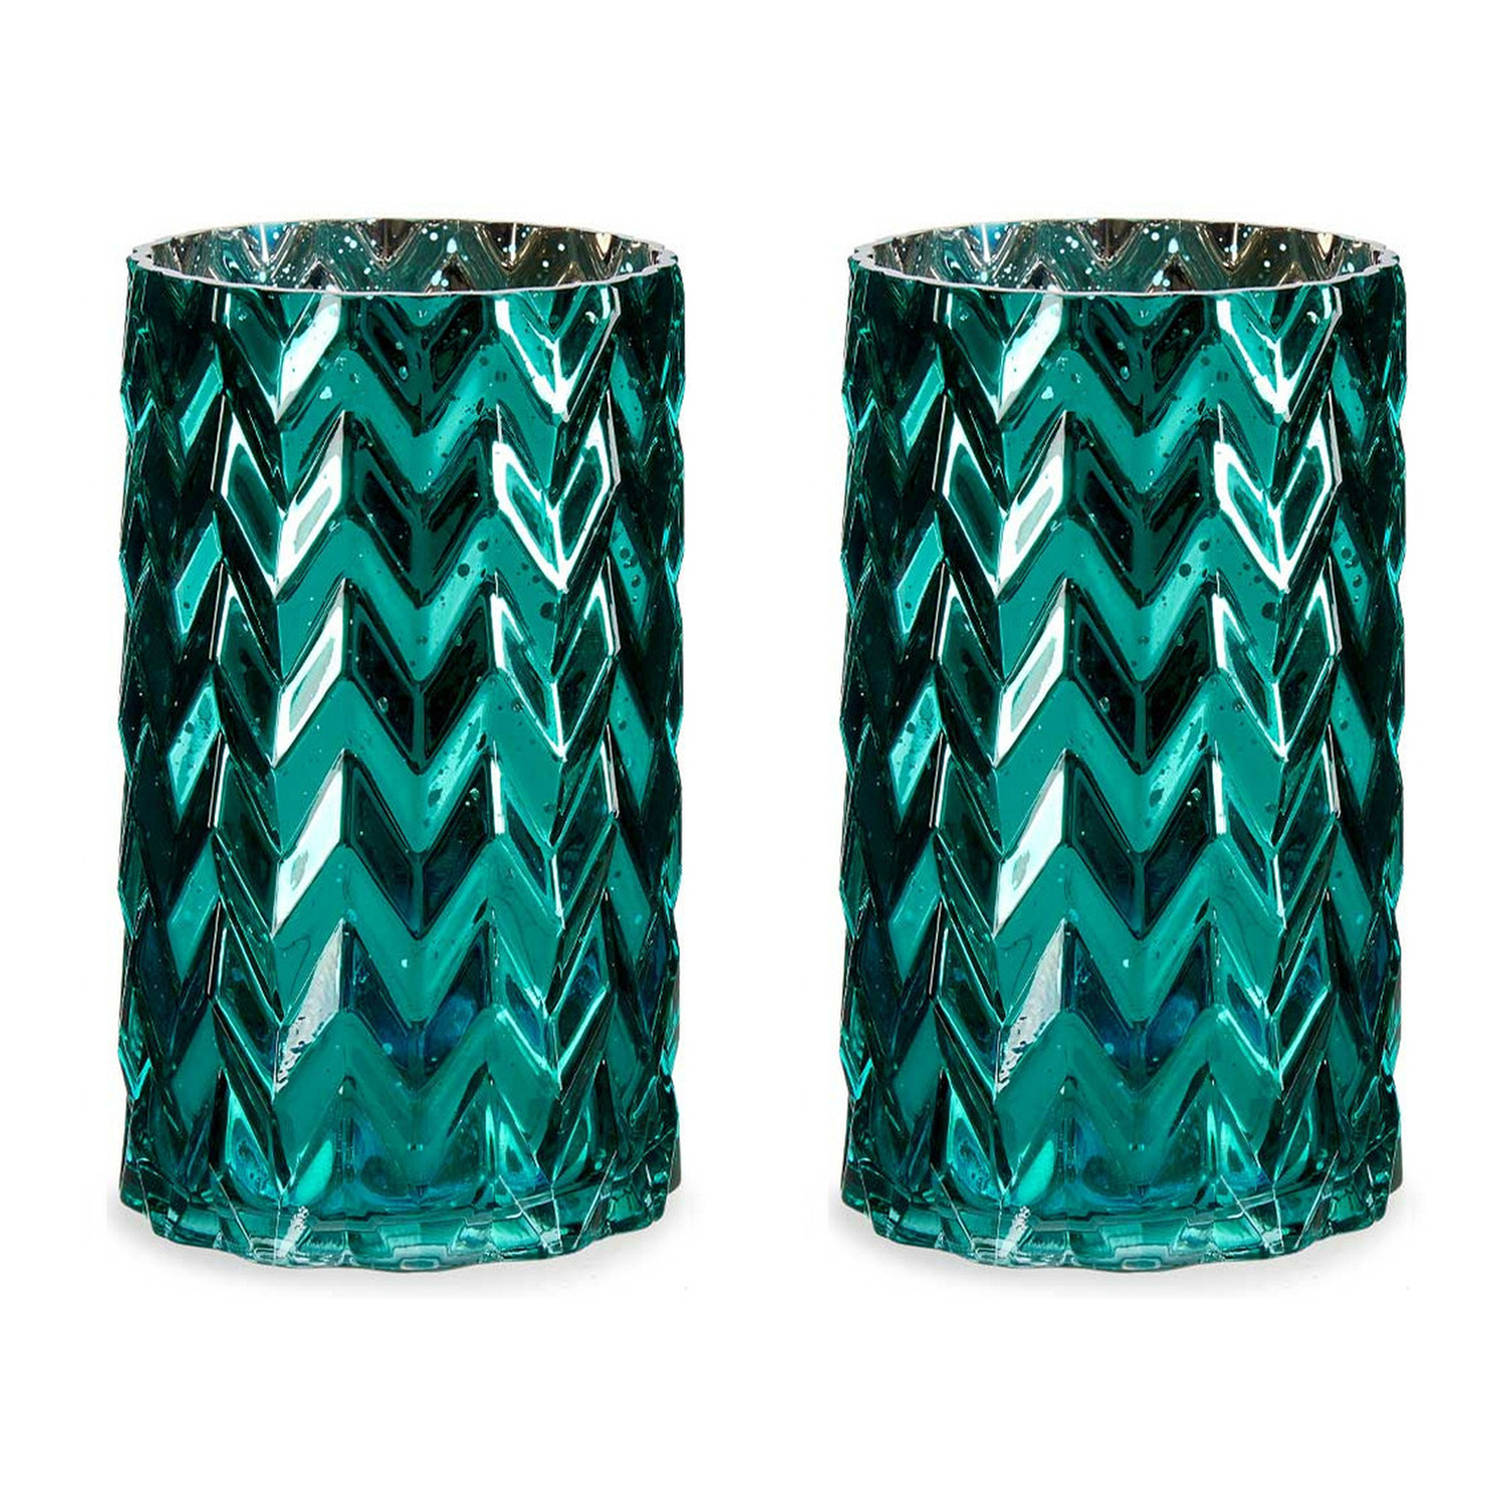 Berri rijk Cumulatief Bloemenvazen 2x stuks - luxe decoratie glas - turquoise blauw - 11 x 20 cm  - Vazen | Blokker